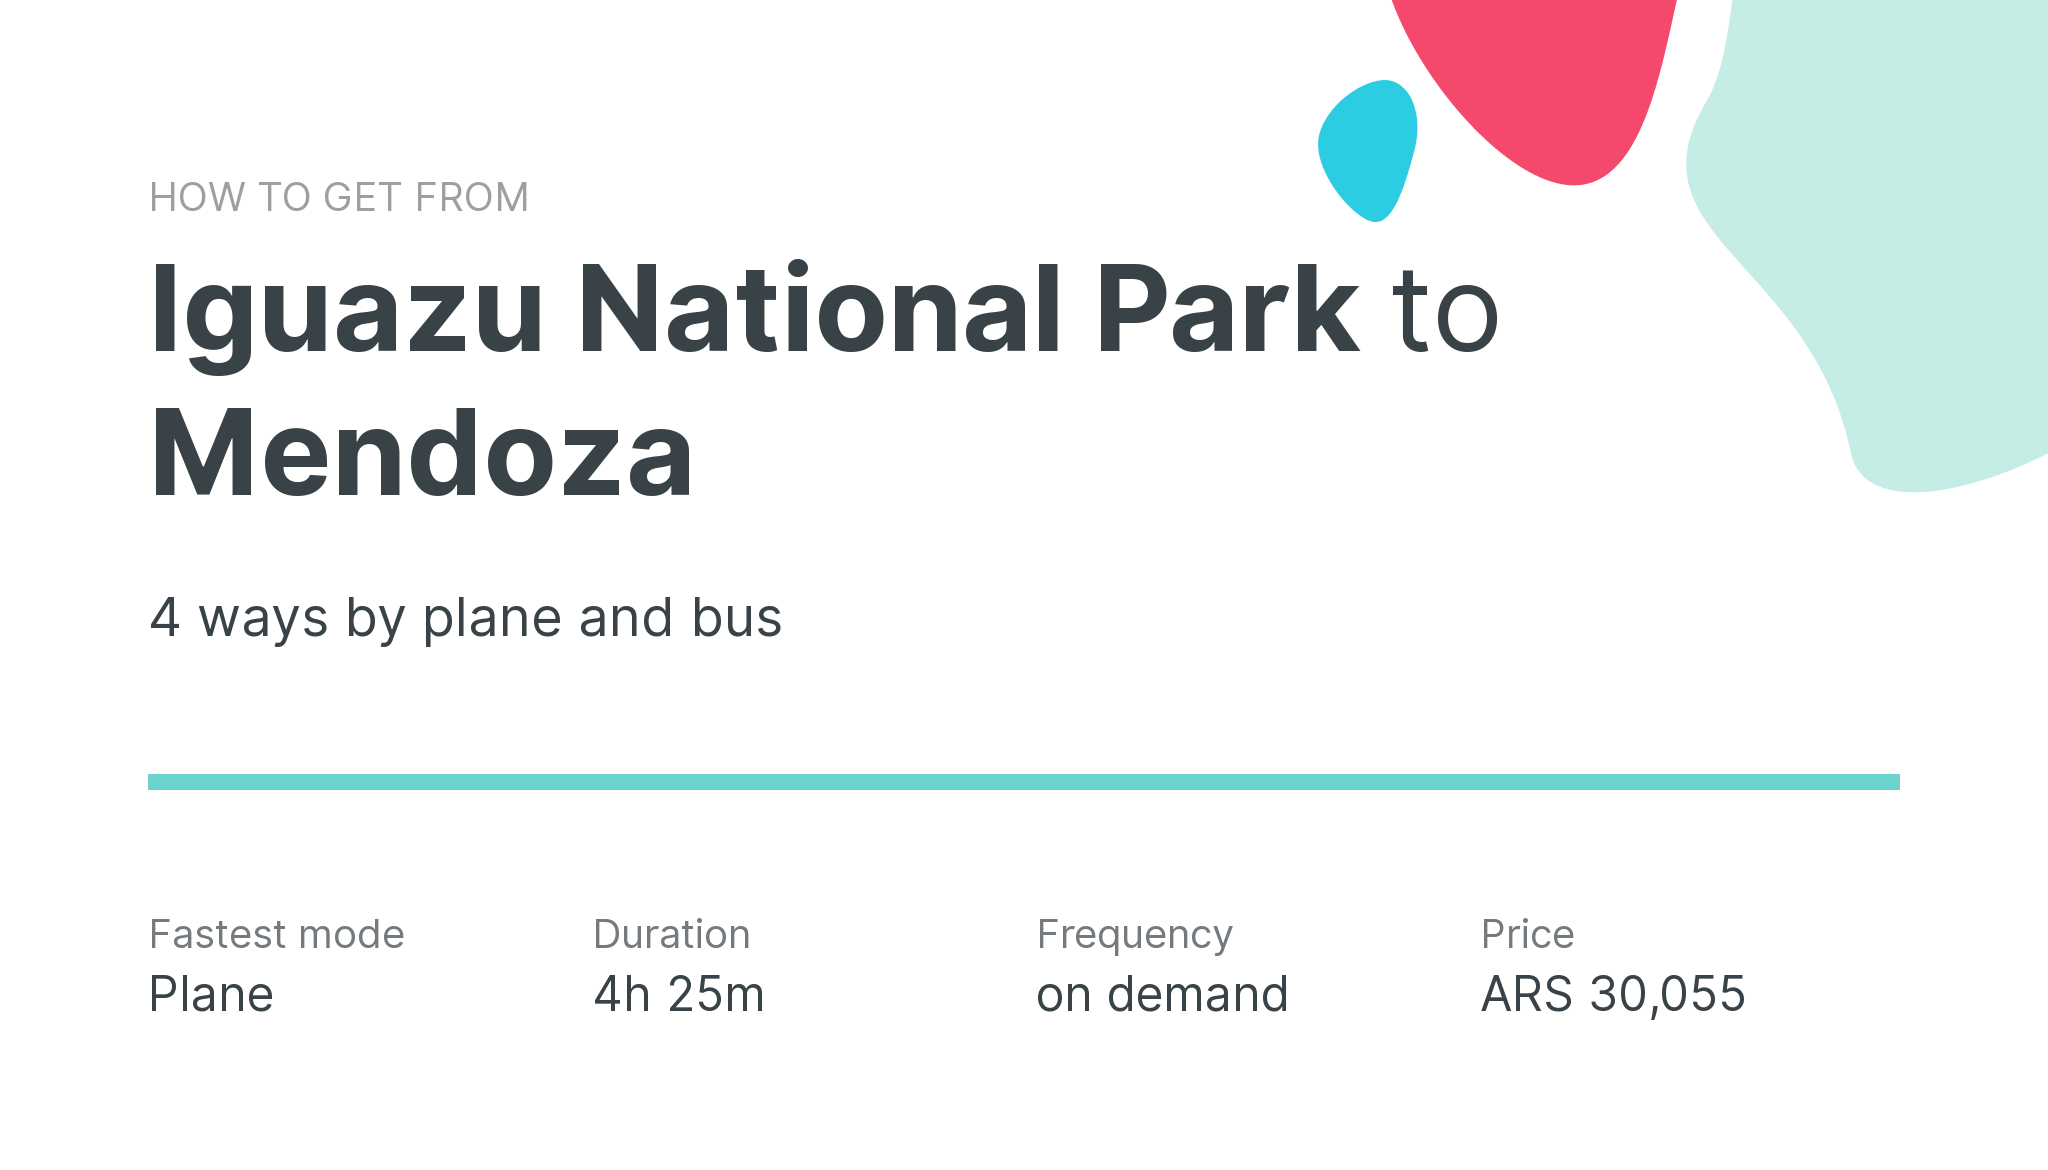 How do I get from Iguazu National Park to Mendoza